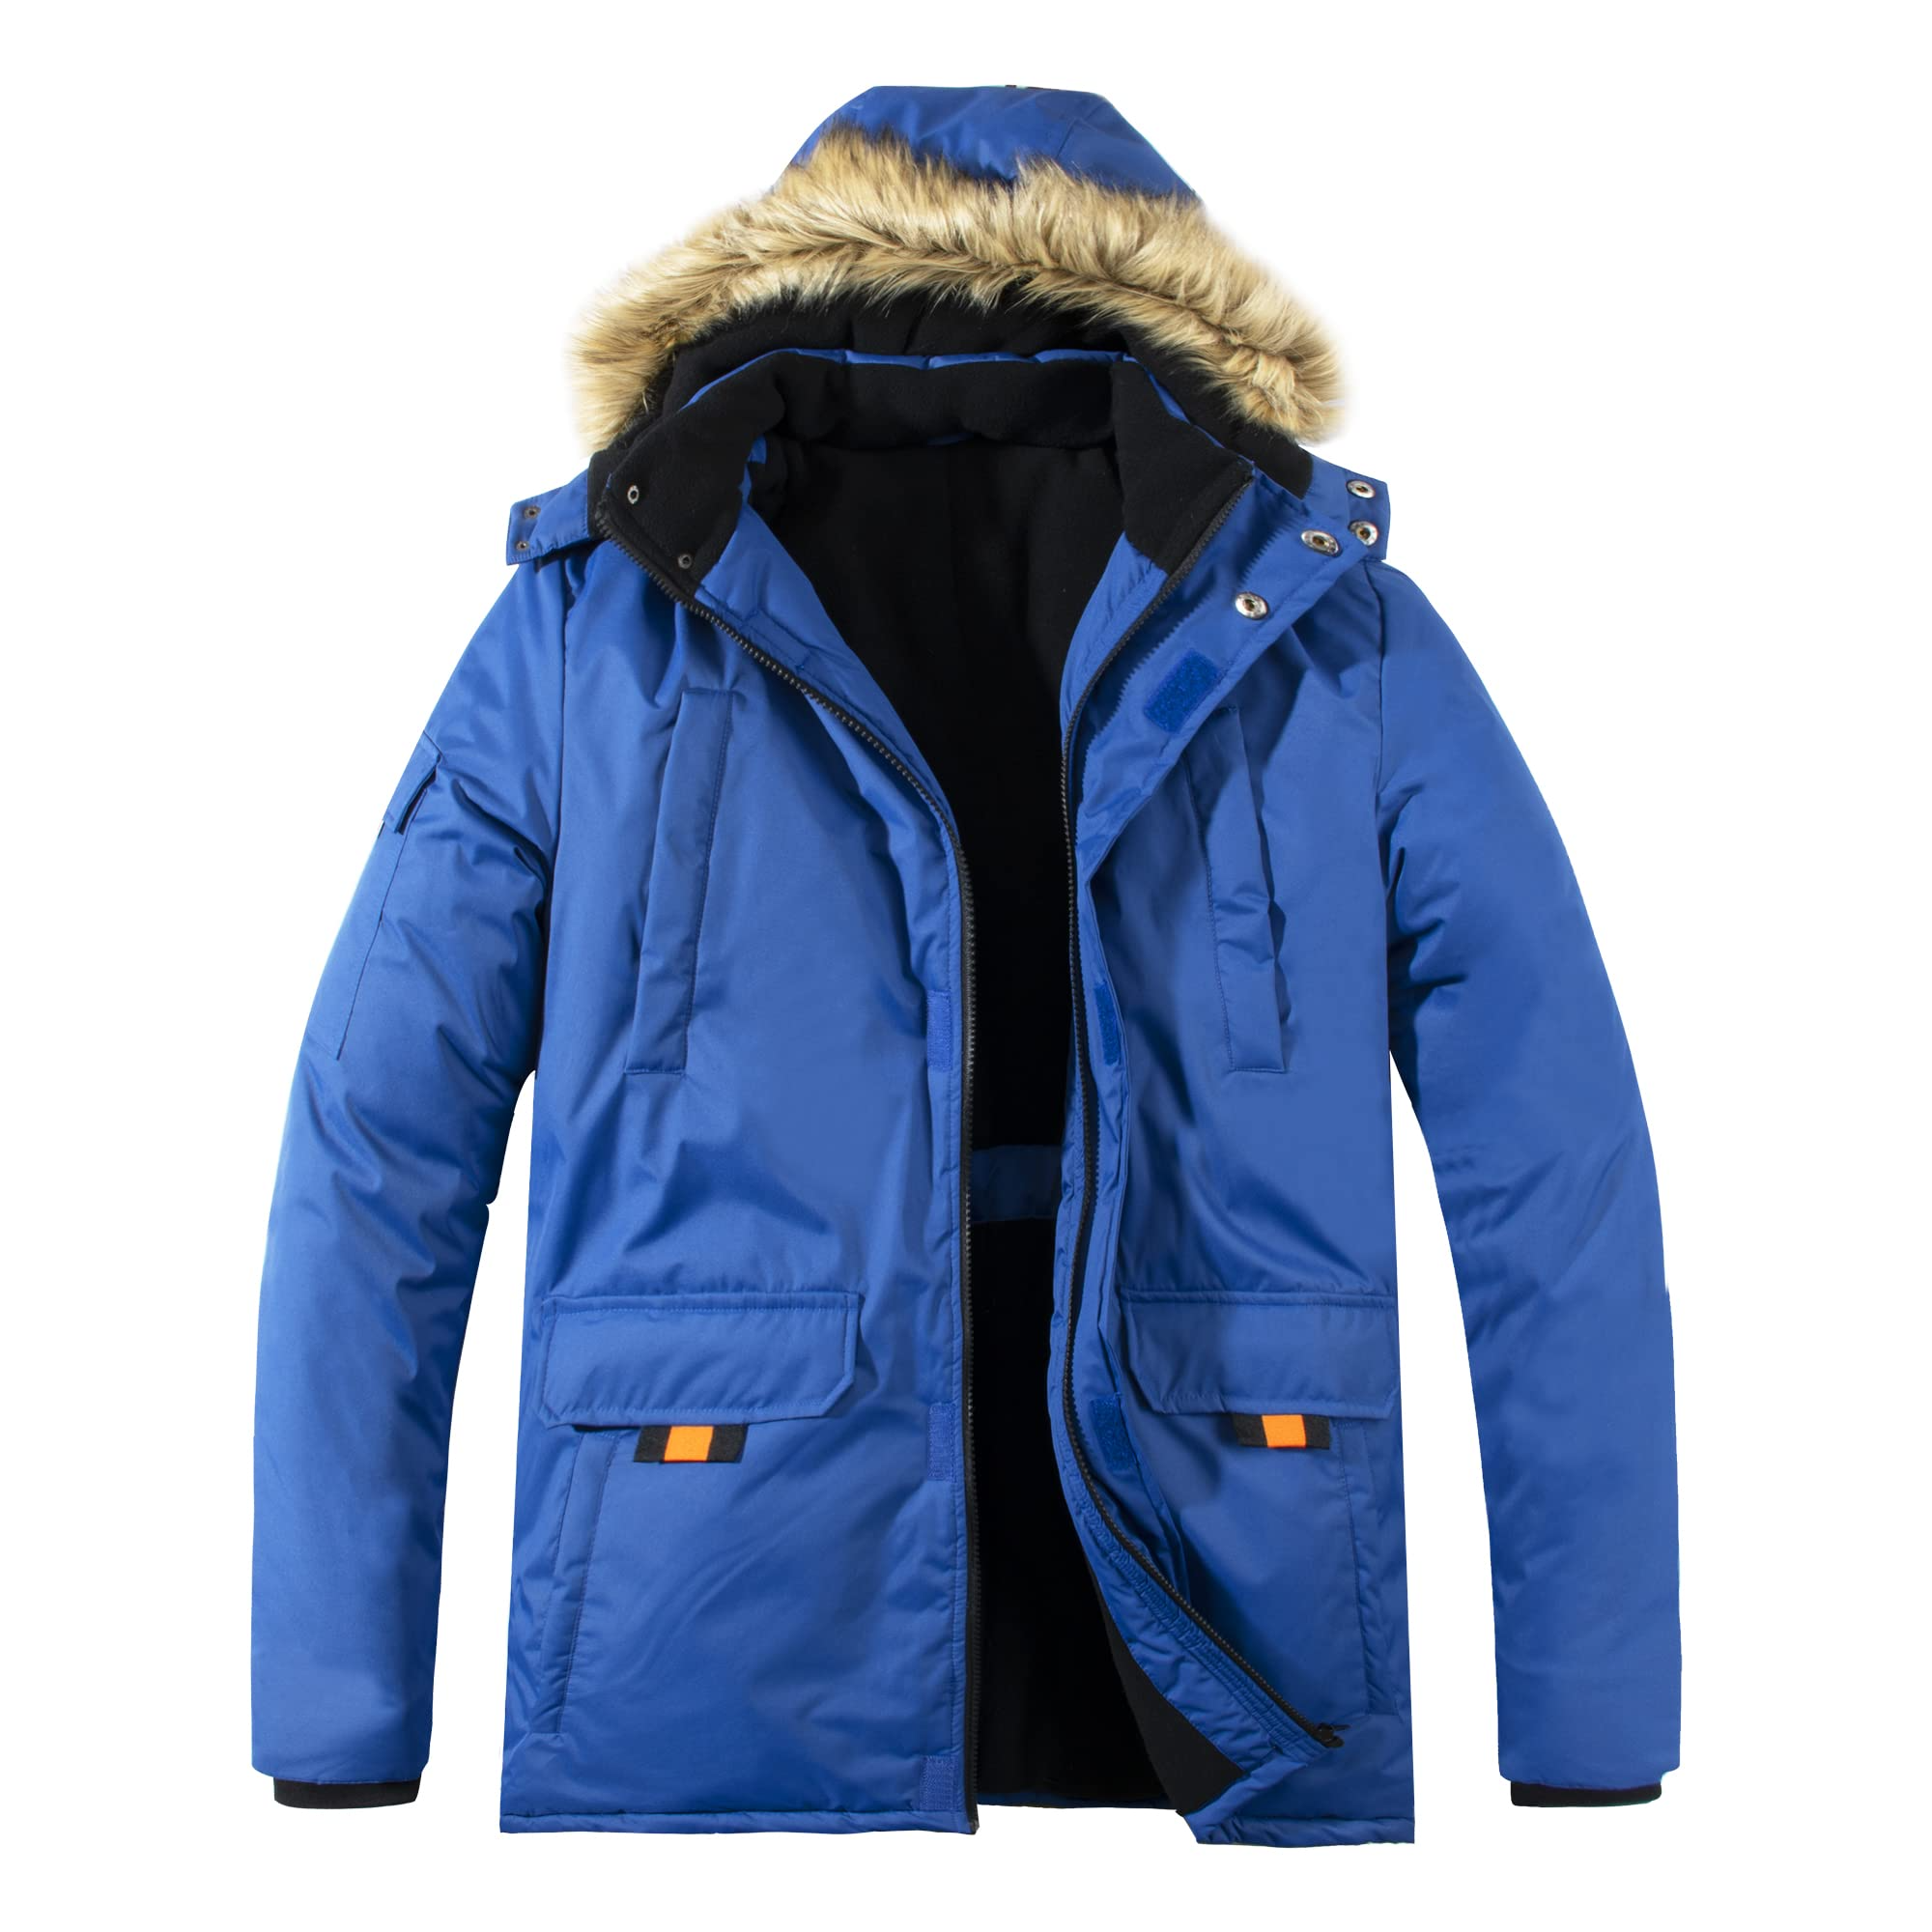 Mens Parka Jacket Winter Waterproof Fleece Outerwear Puffer Coat with Fur Hood